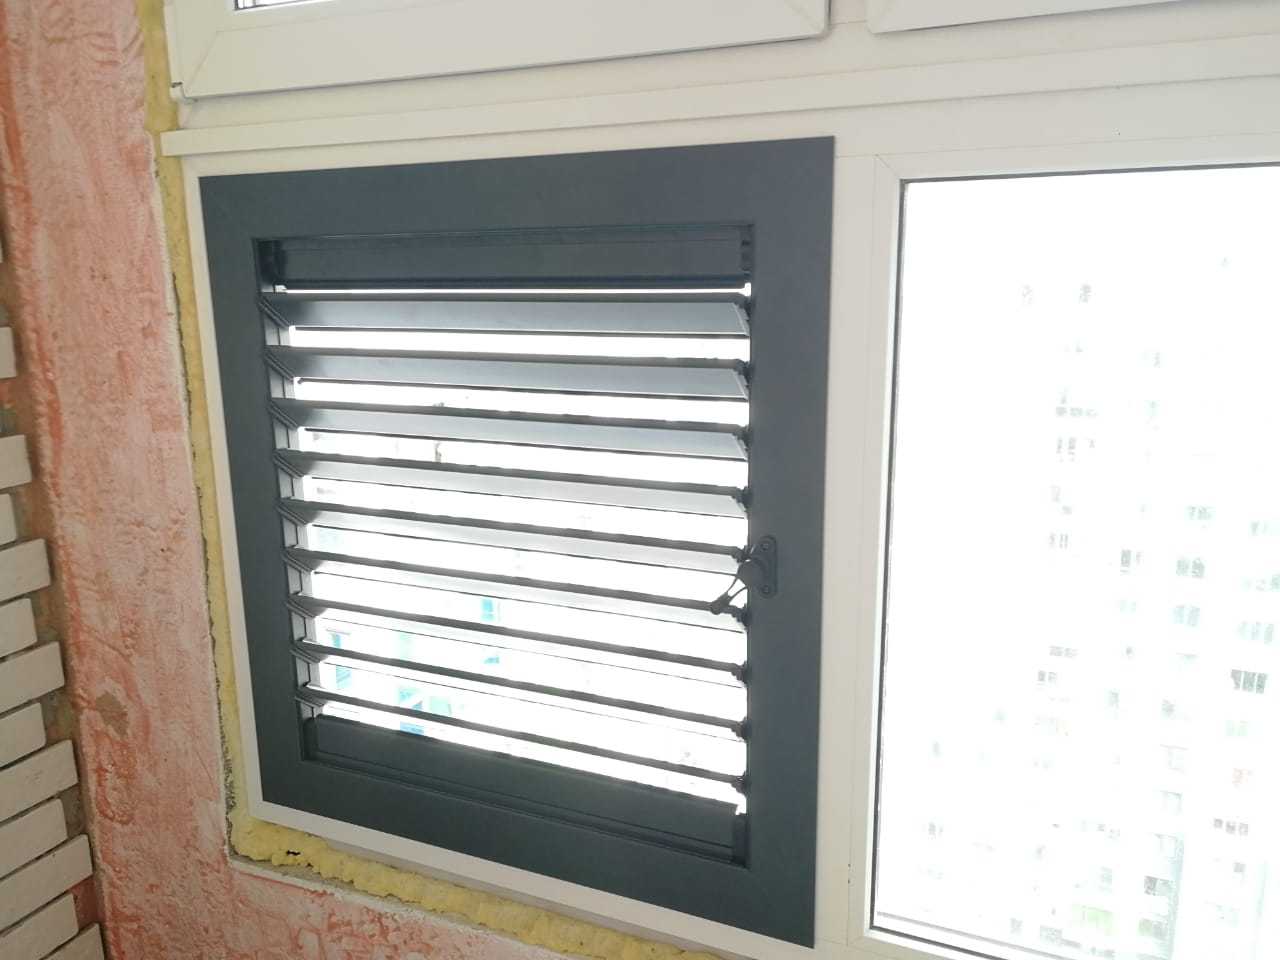 Теперь вентиляционную решетку на балконе можно закрыть. Установка вентрешеток в регулировкой жалюзи - герметичное запирание и шумоизоляция. Установка на балкон, вместо любого стеклопакета.